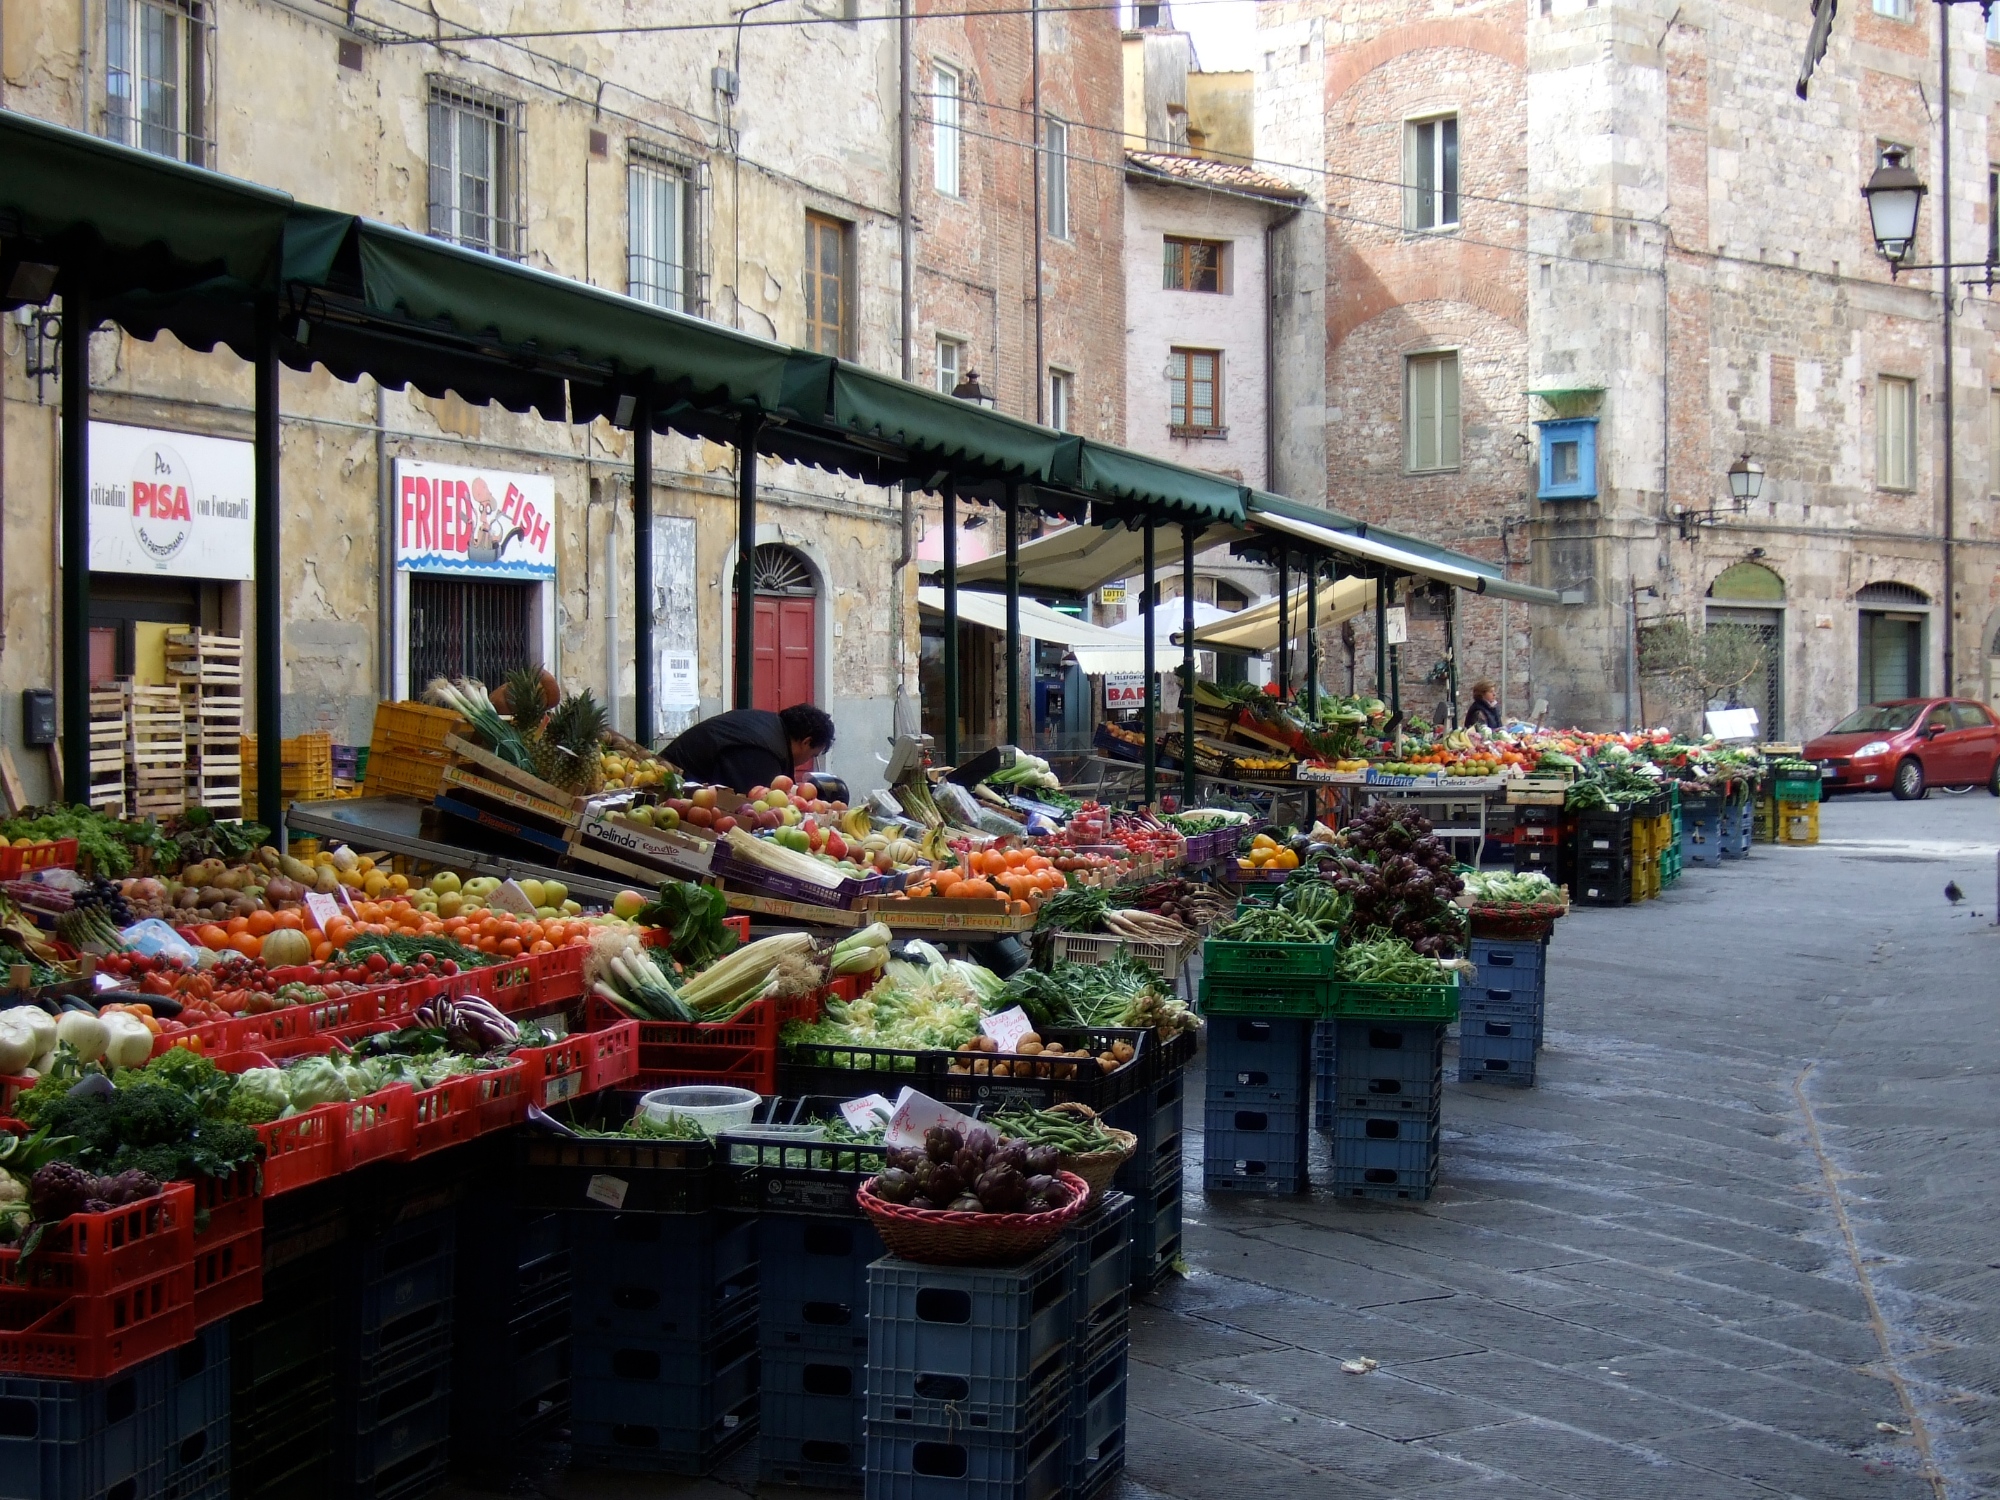 The market in Piazza delle Vettovaglie